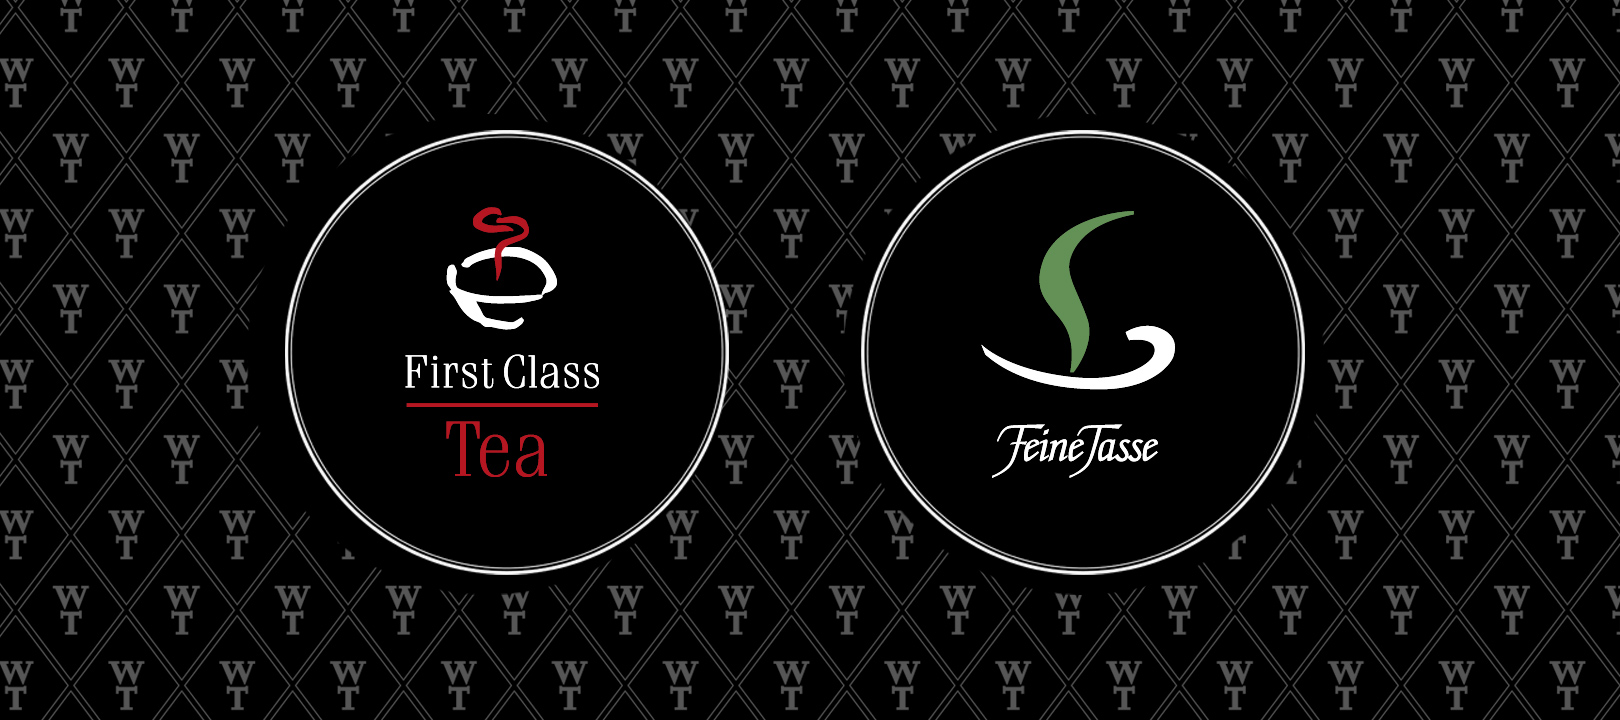 Logos_First-Class-Tea-und-Feine-Tasse